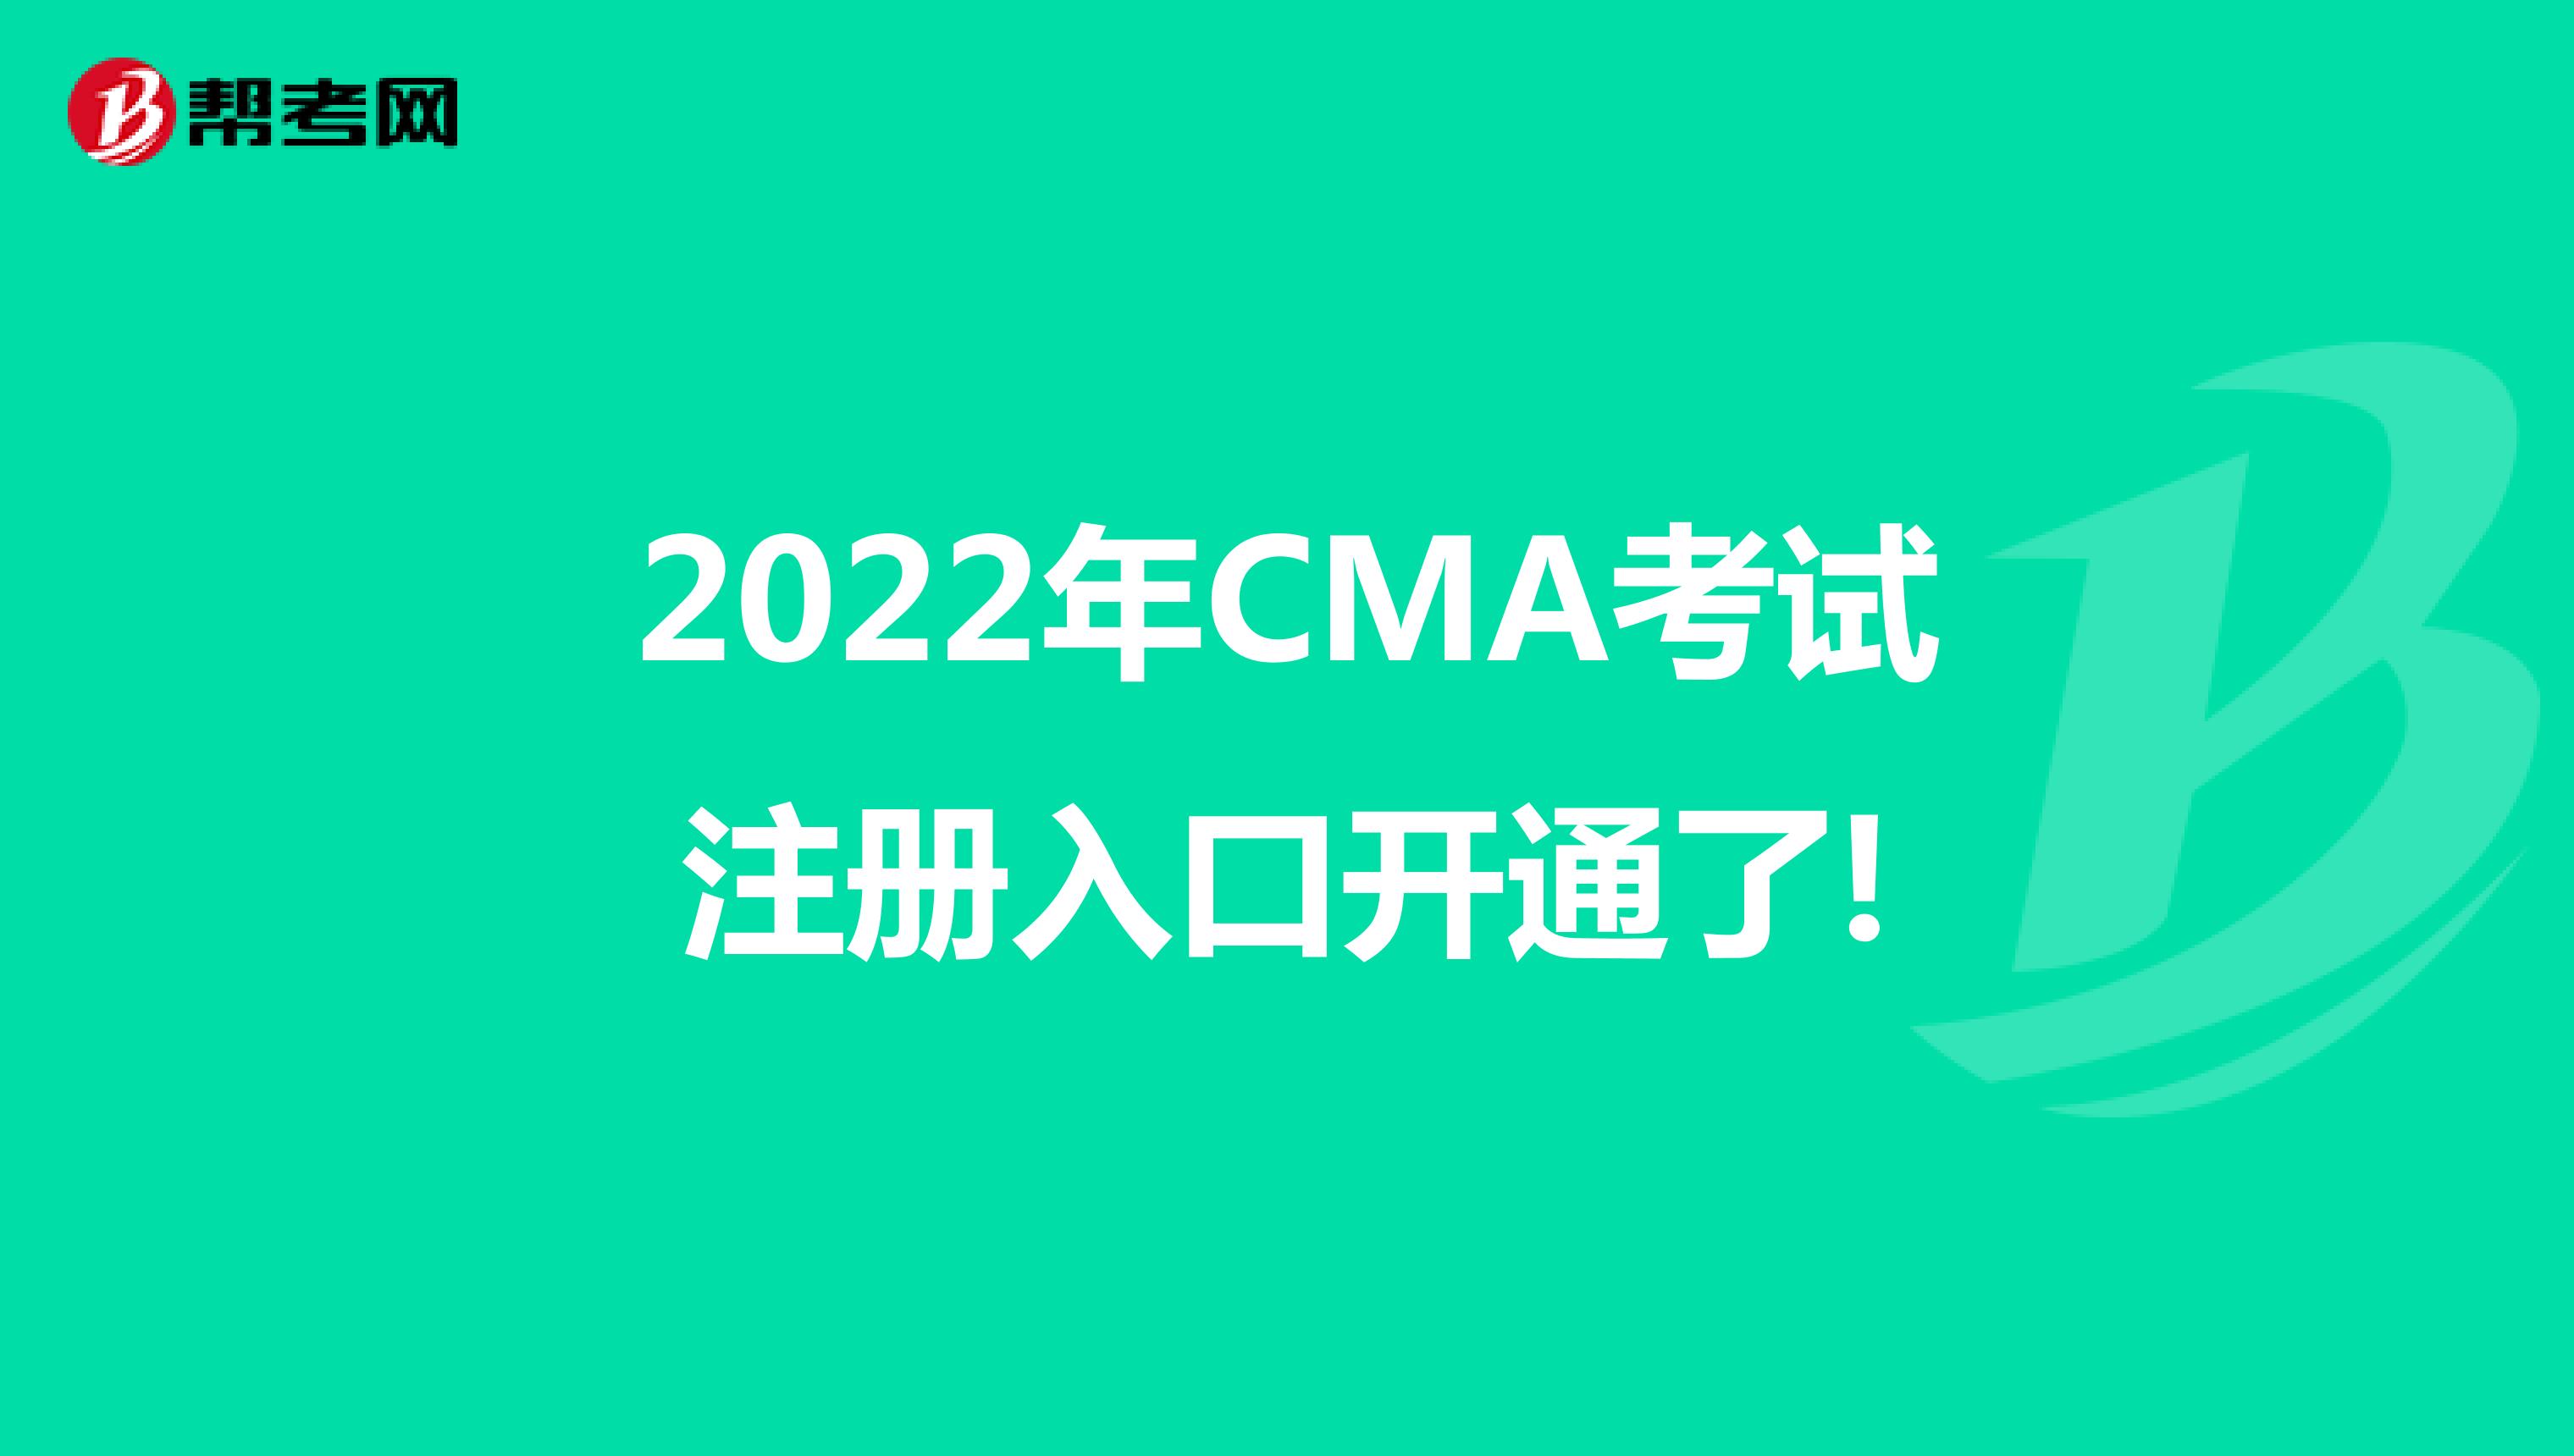 2022年CMA考试注册入口开通了!